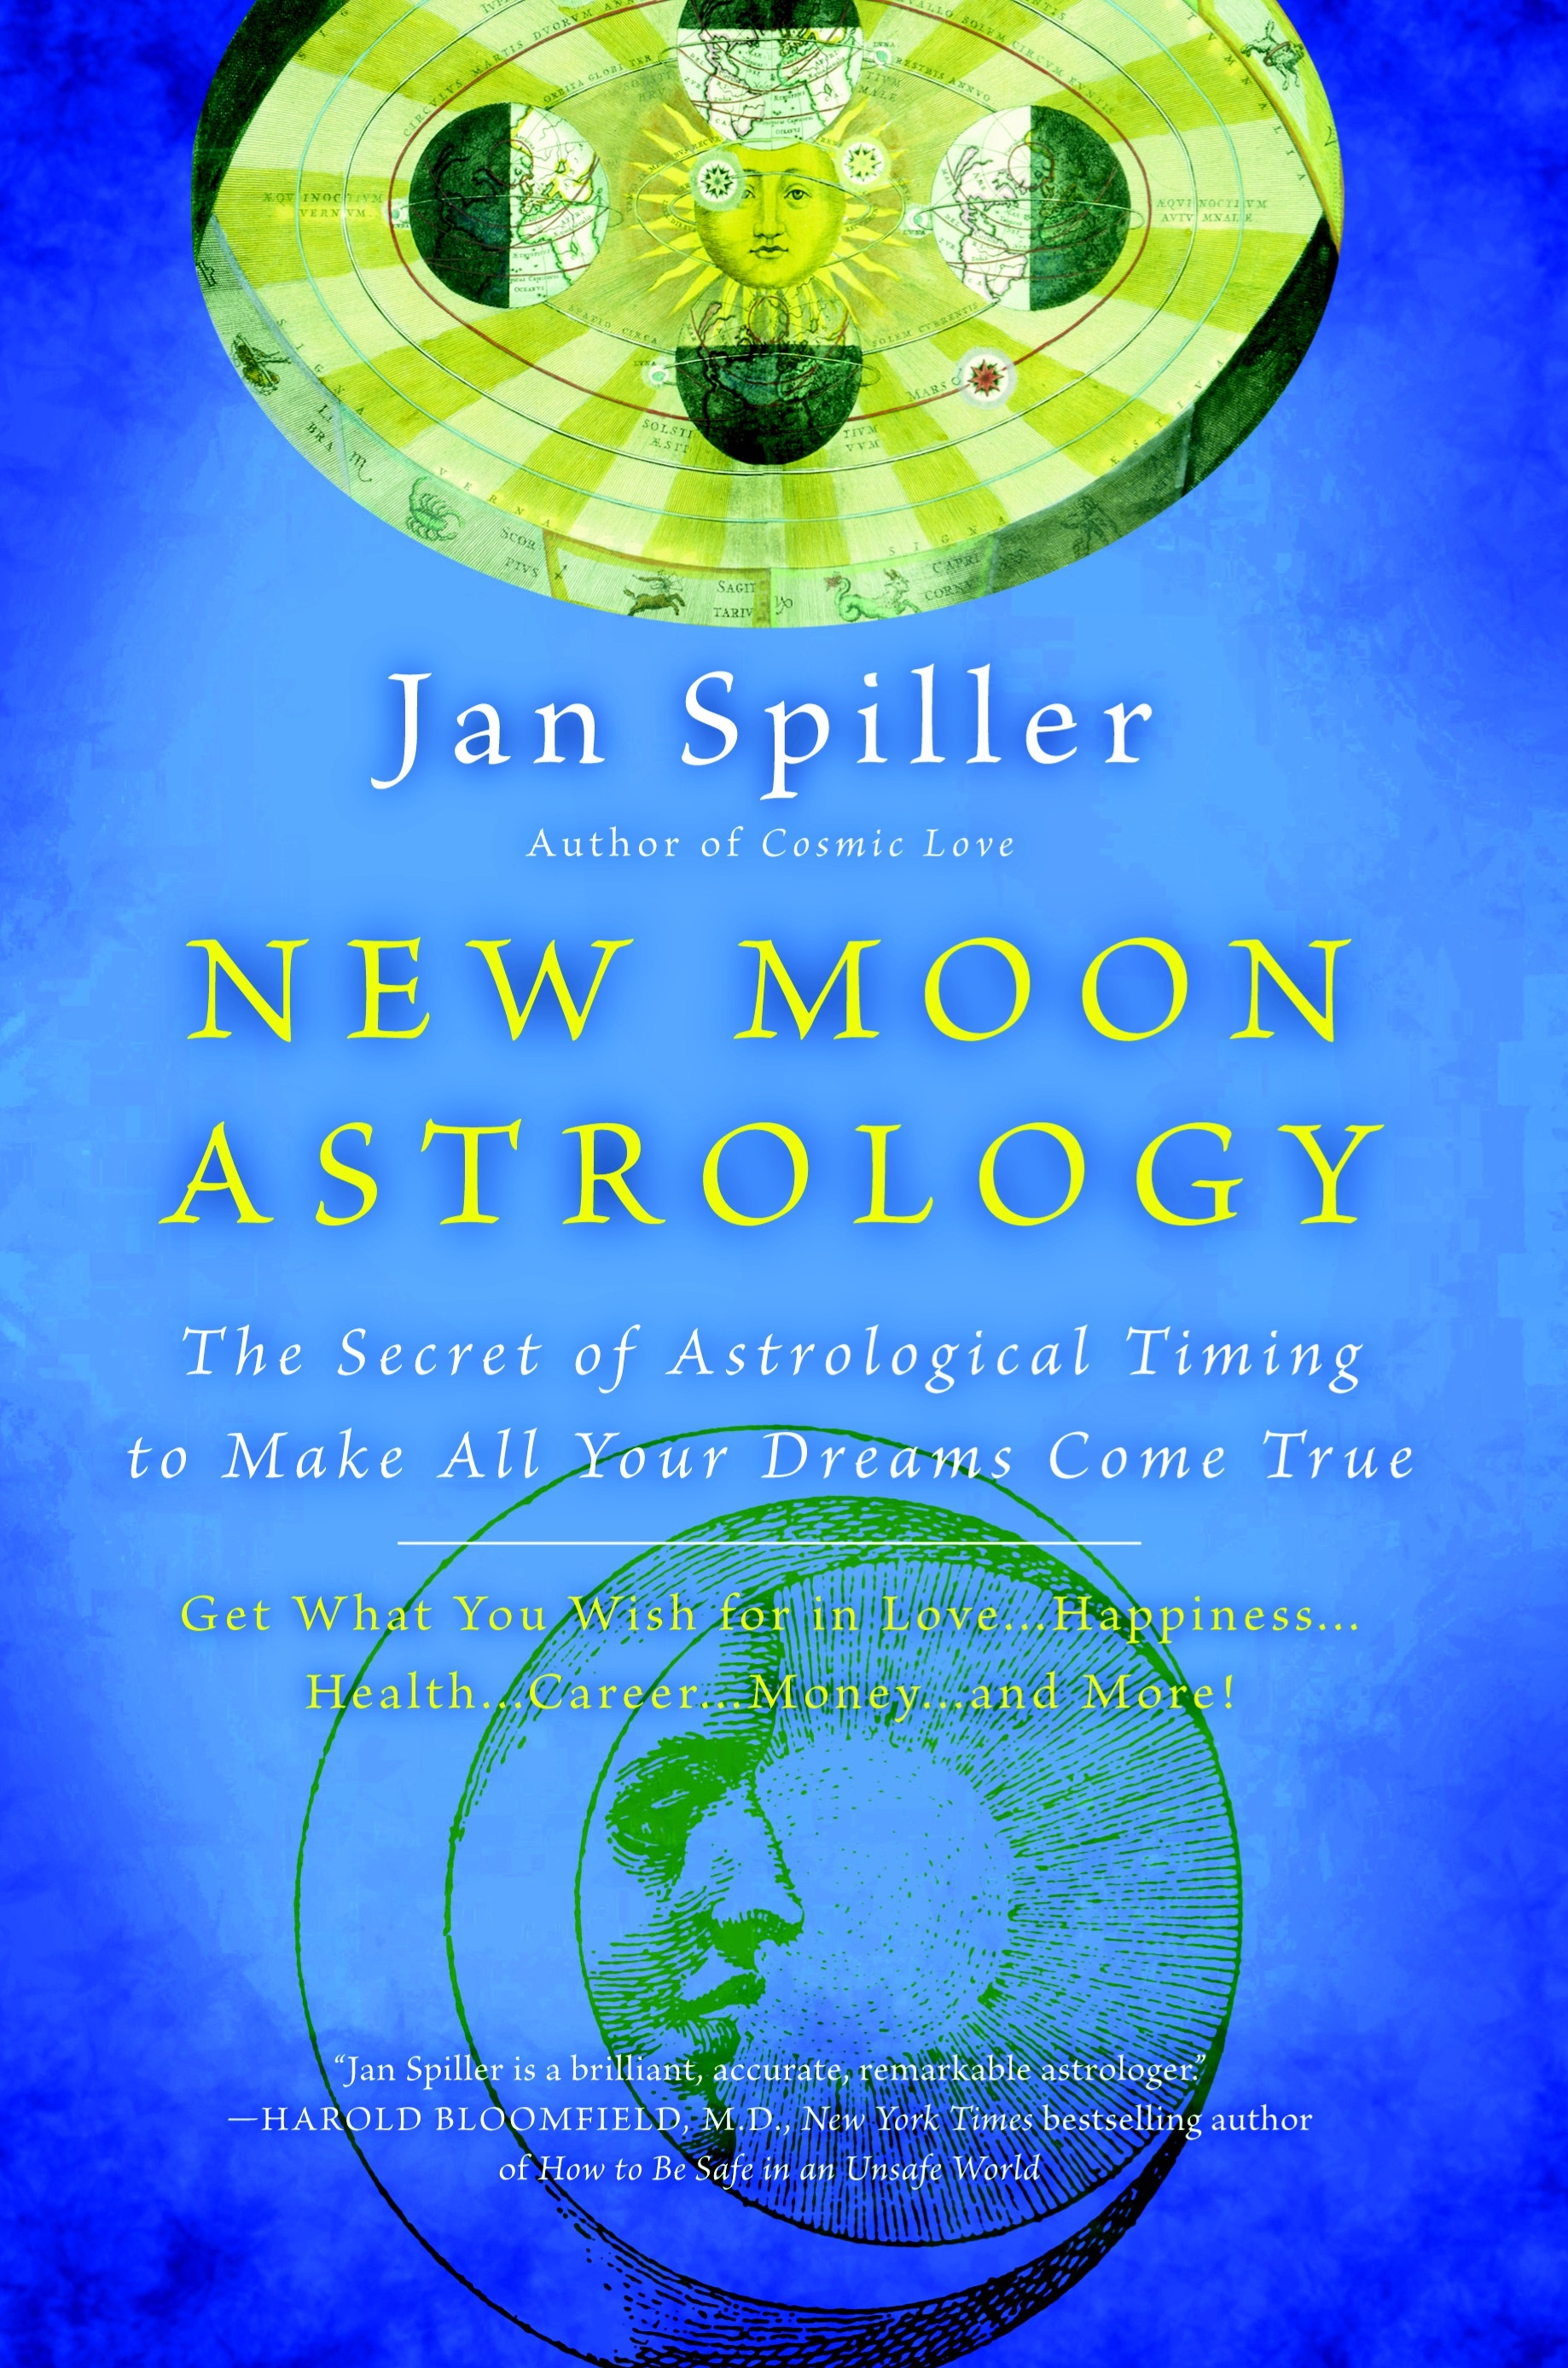 New Moon Astrology by Jan Spiller Penguin Books Australia